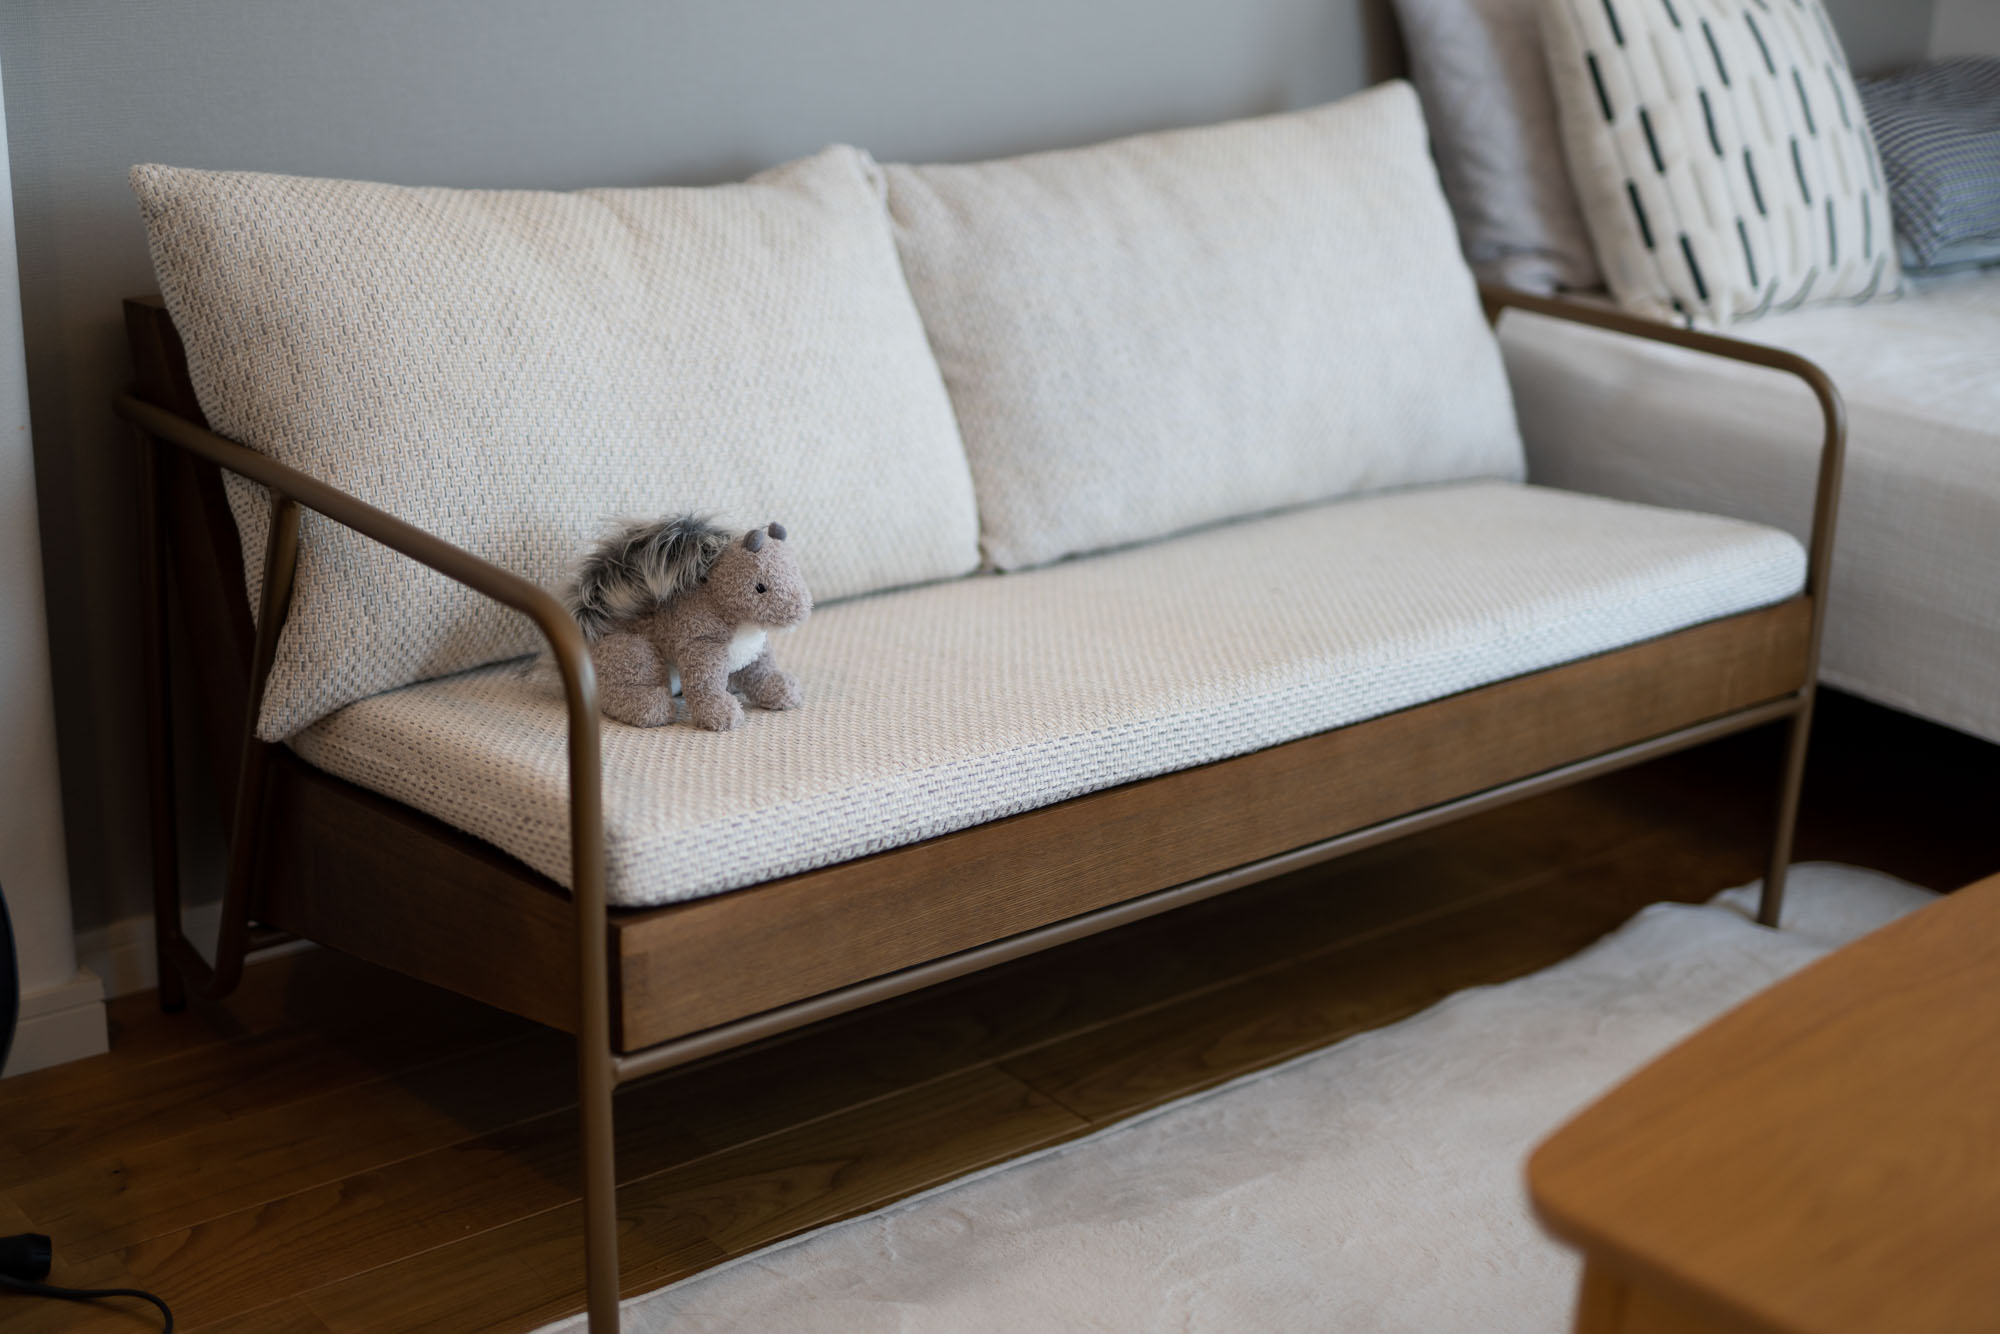 こちらはミツヨシで購入したソファ。「脚の色が床に似合うかなと思って購入しました。座面が固めなところも、個人的には気に入っています」